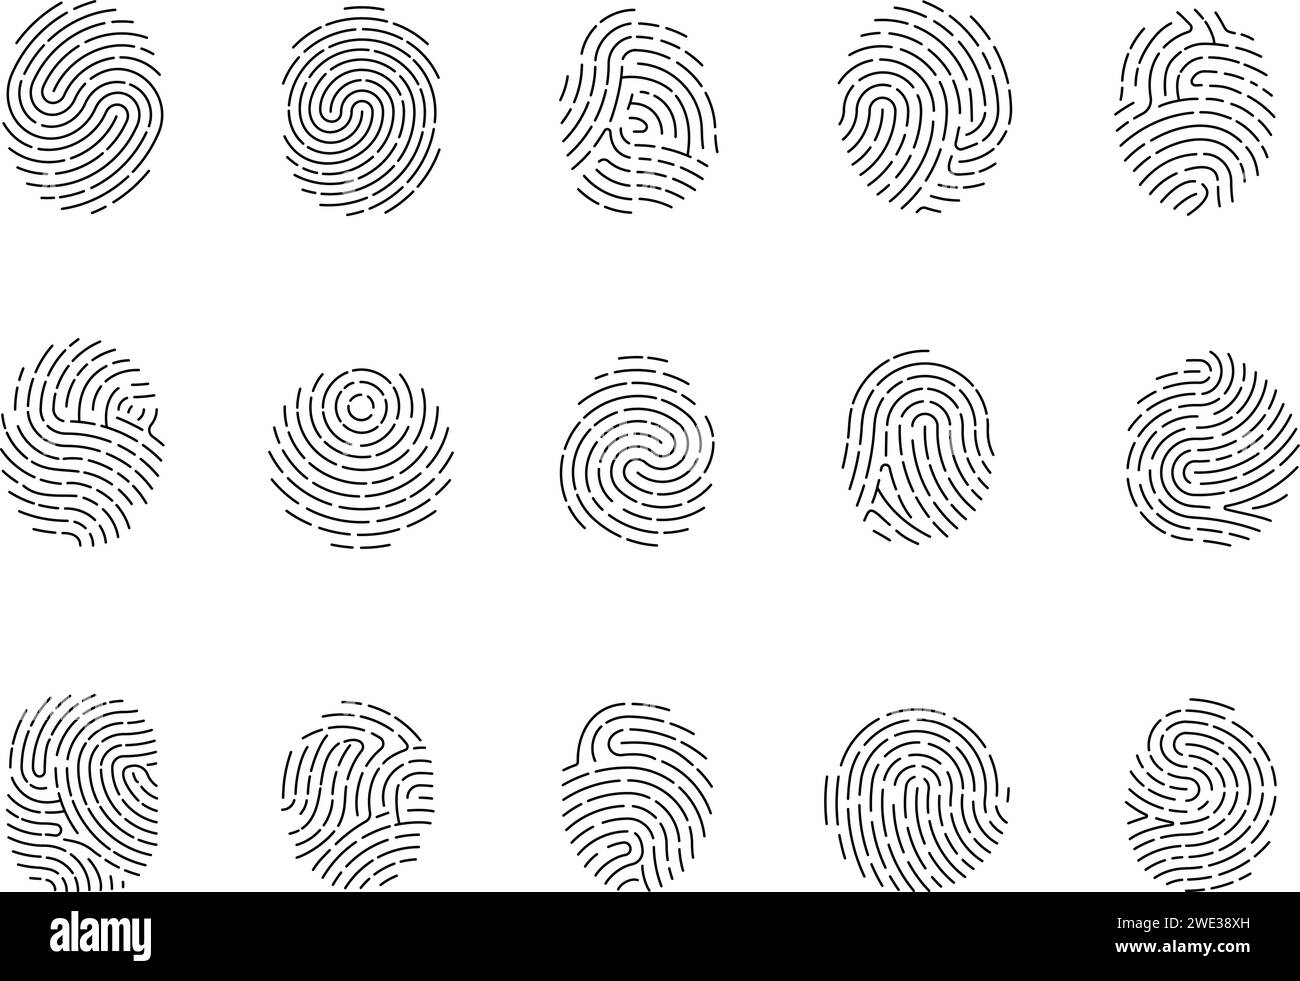 Impronta digitale della linea. Icone di impronte digitali isolate per id, indagini o servizi di sicurezza. Informazioni umane biometriche, impronta digitale discreta vettore Illustrazione Vettoriale